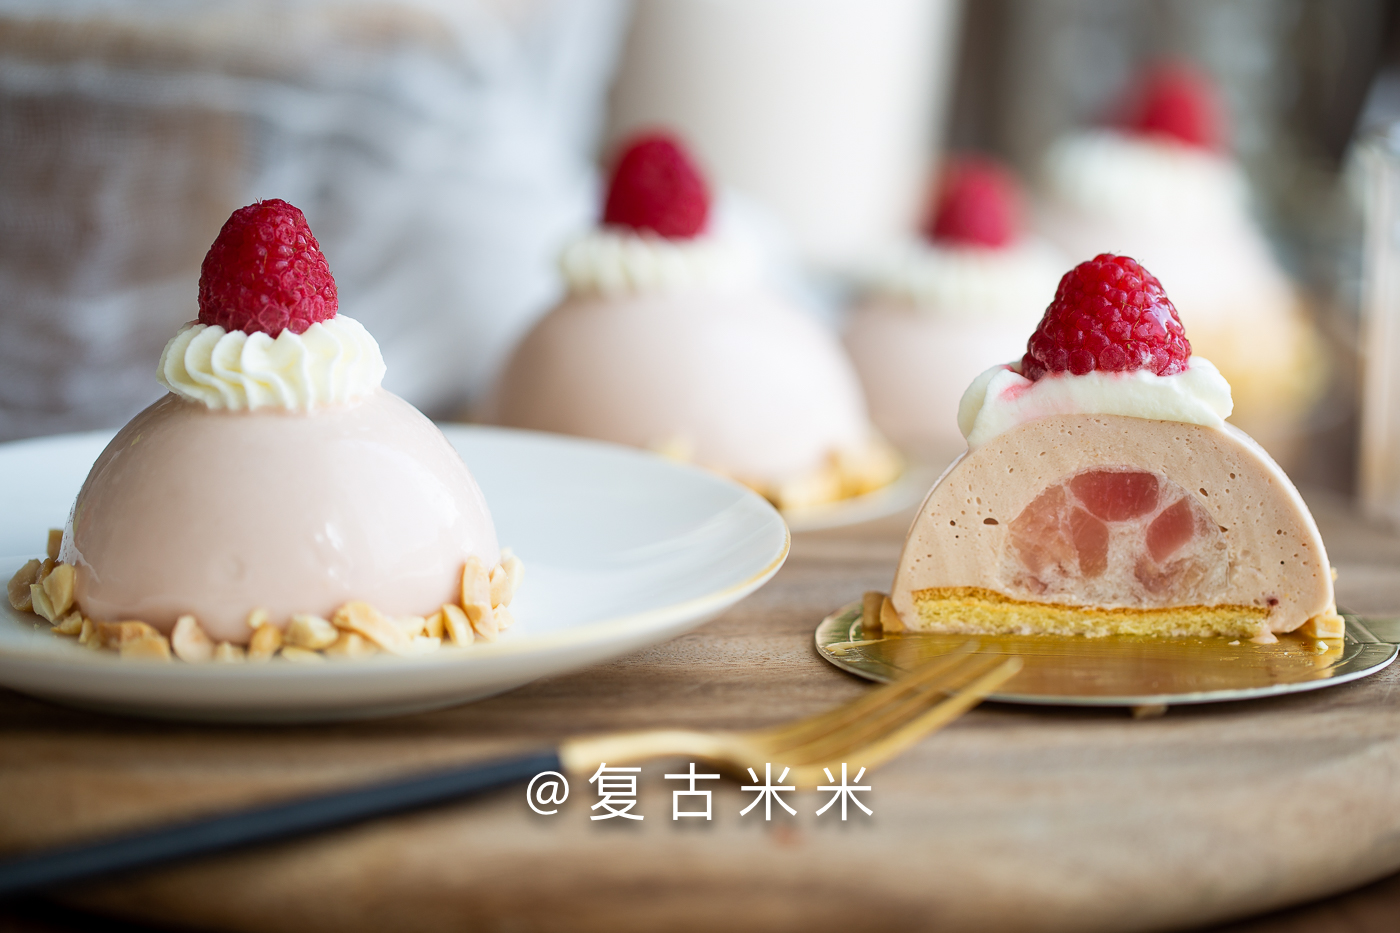 自制法式甜点,草莓蜜桃慕斯,说实话,都是冰箱剩余材料做的,做法分享在